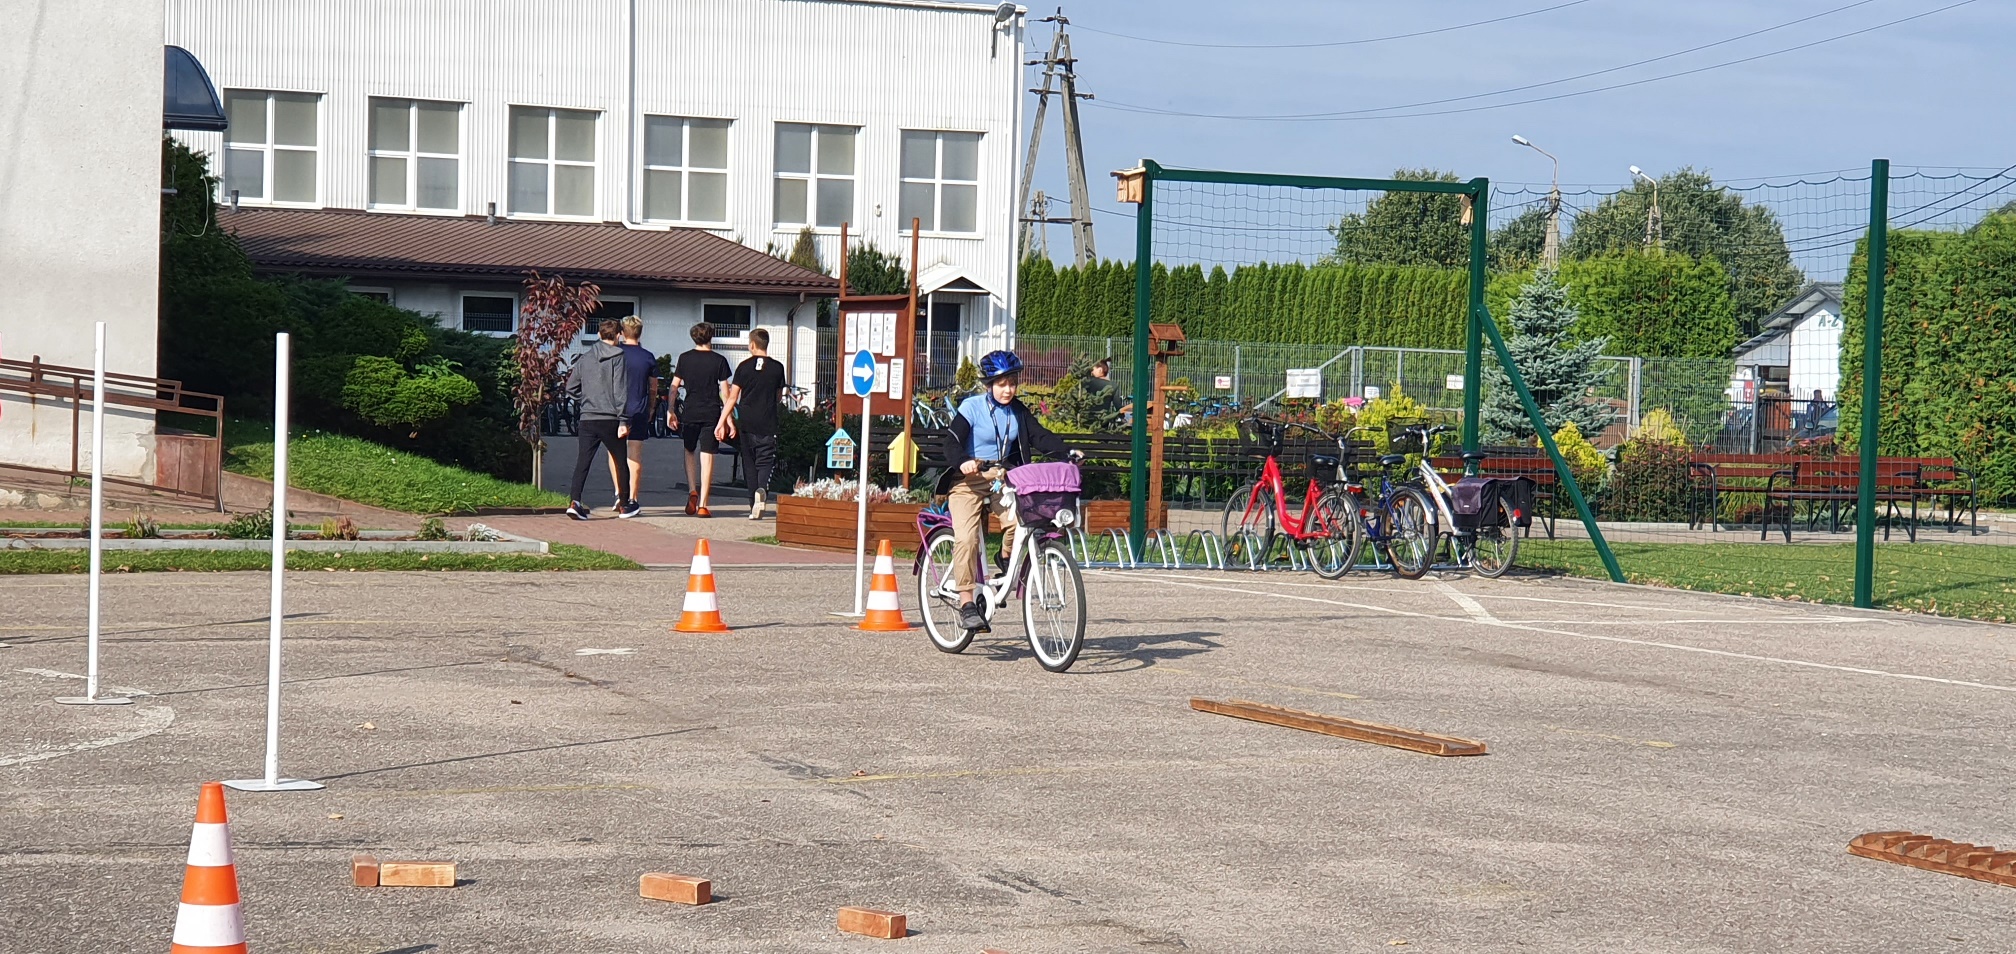 Dziewczynka w niebieskiej kurtce i niebieskim kasku jedzie rowerem po placu, gdzie trasę jazdy wyznaczają cegły i pachołki